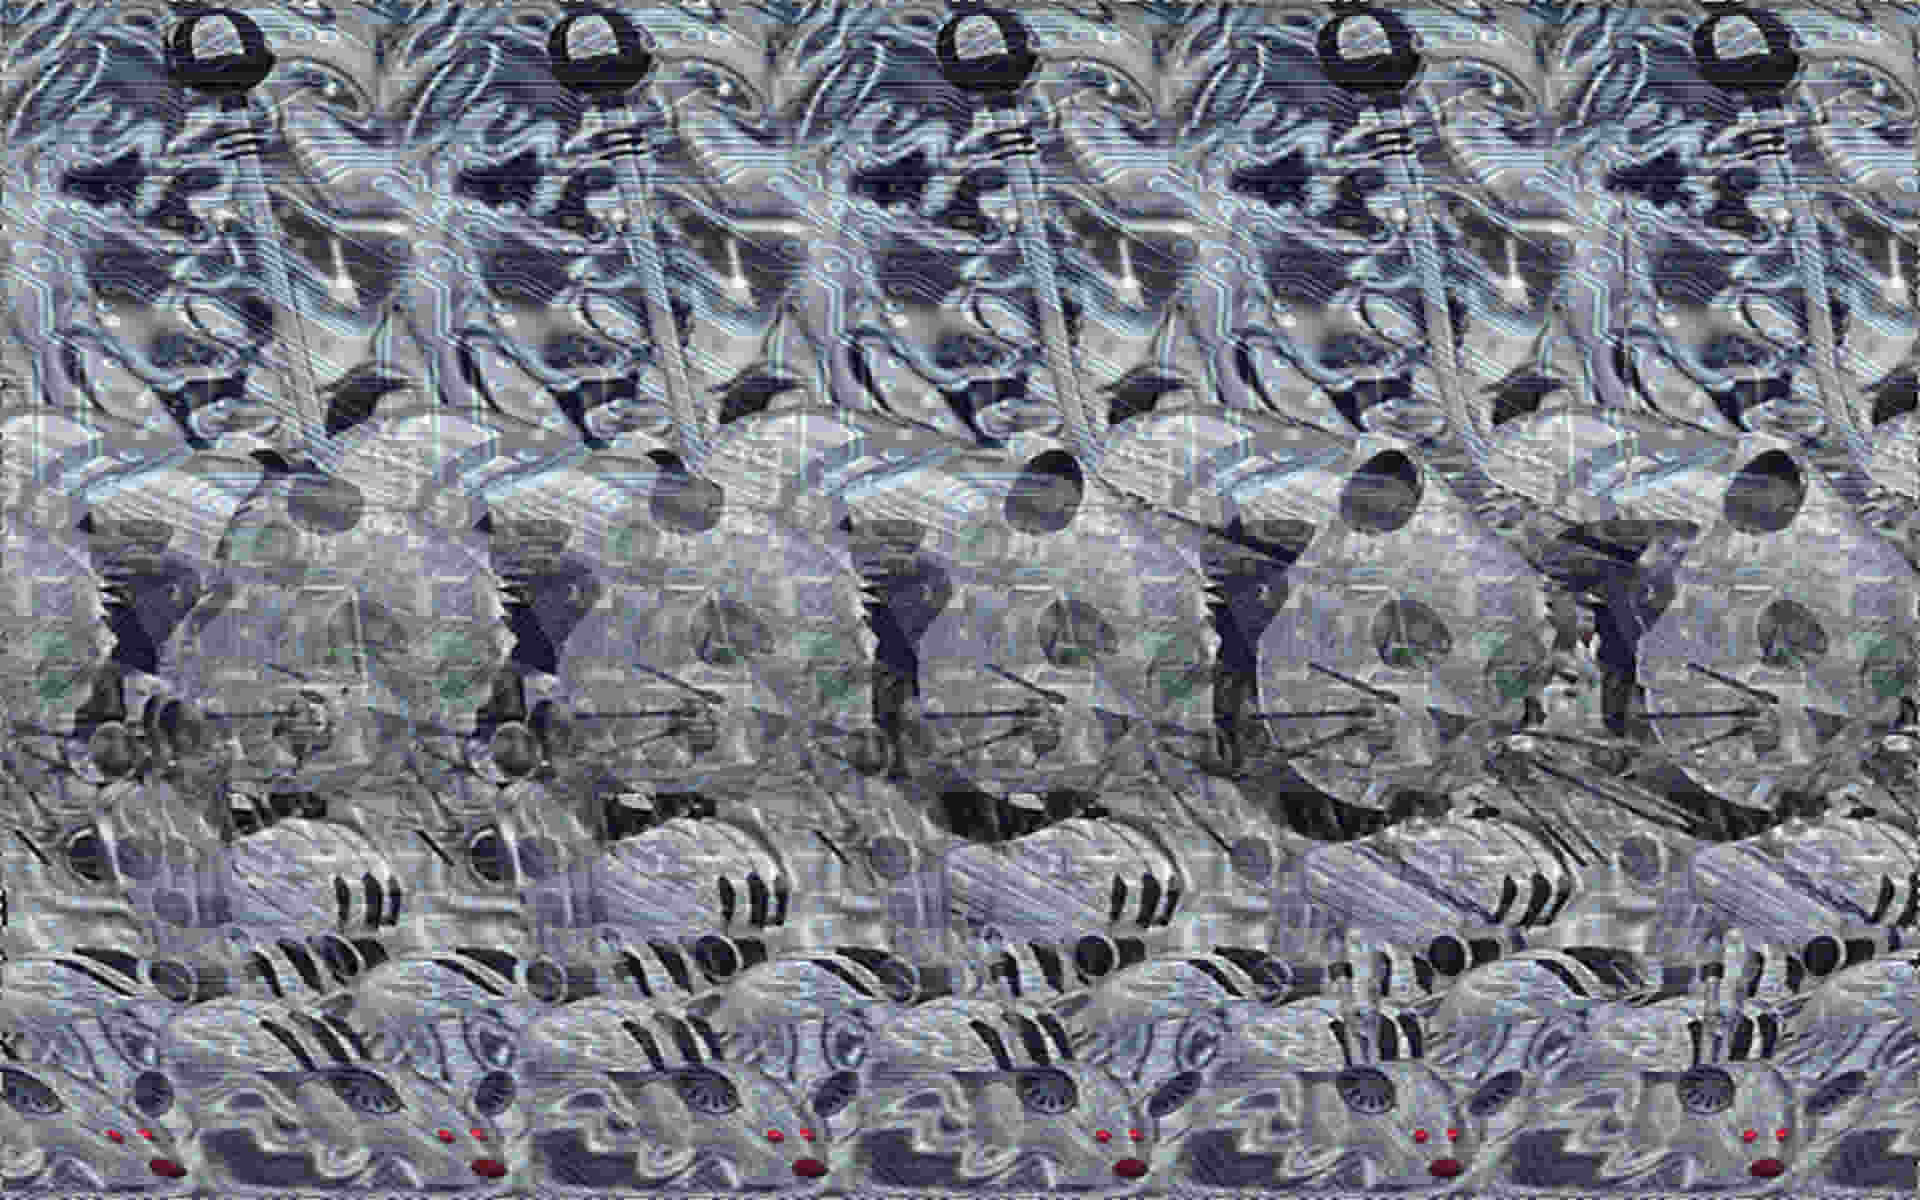 stereogramme en 3 d image plein ecran chat_souris